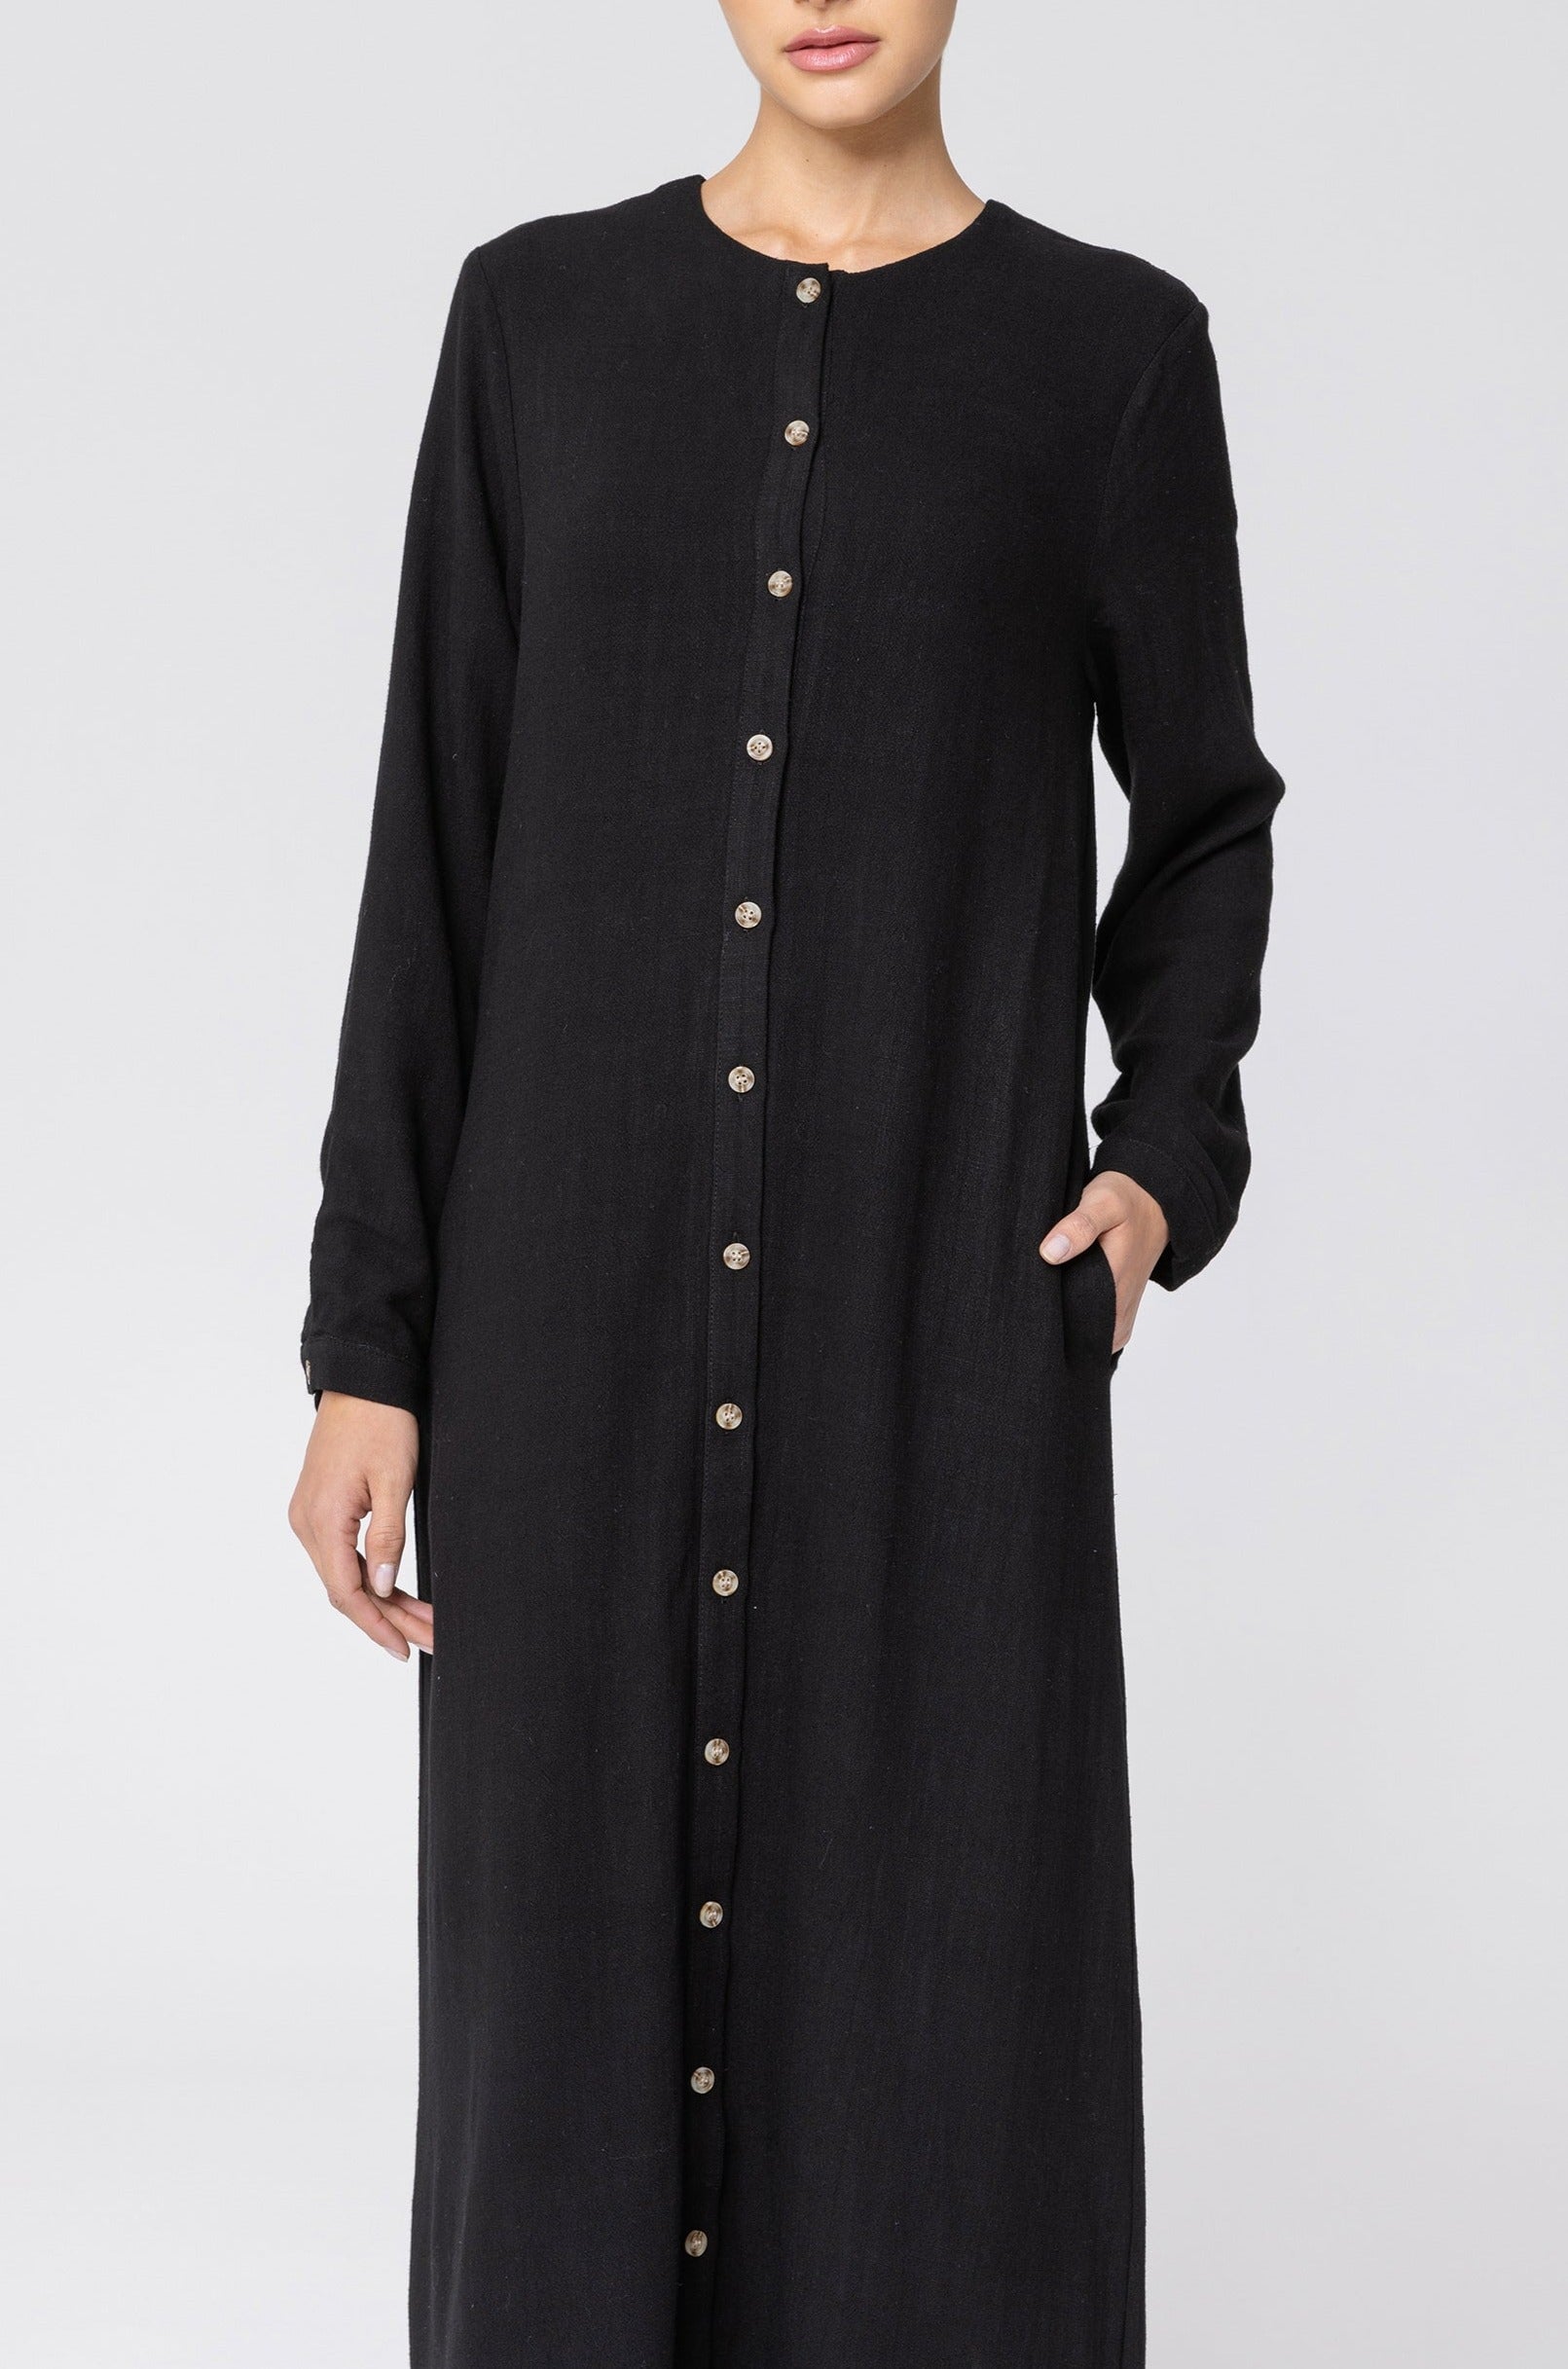 Elham Cotton Linen Maxi Shirt Dress - Black Veiled 